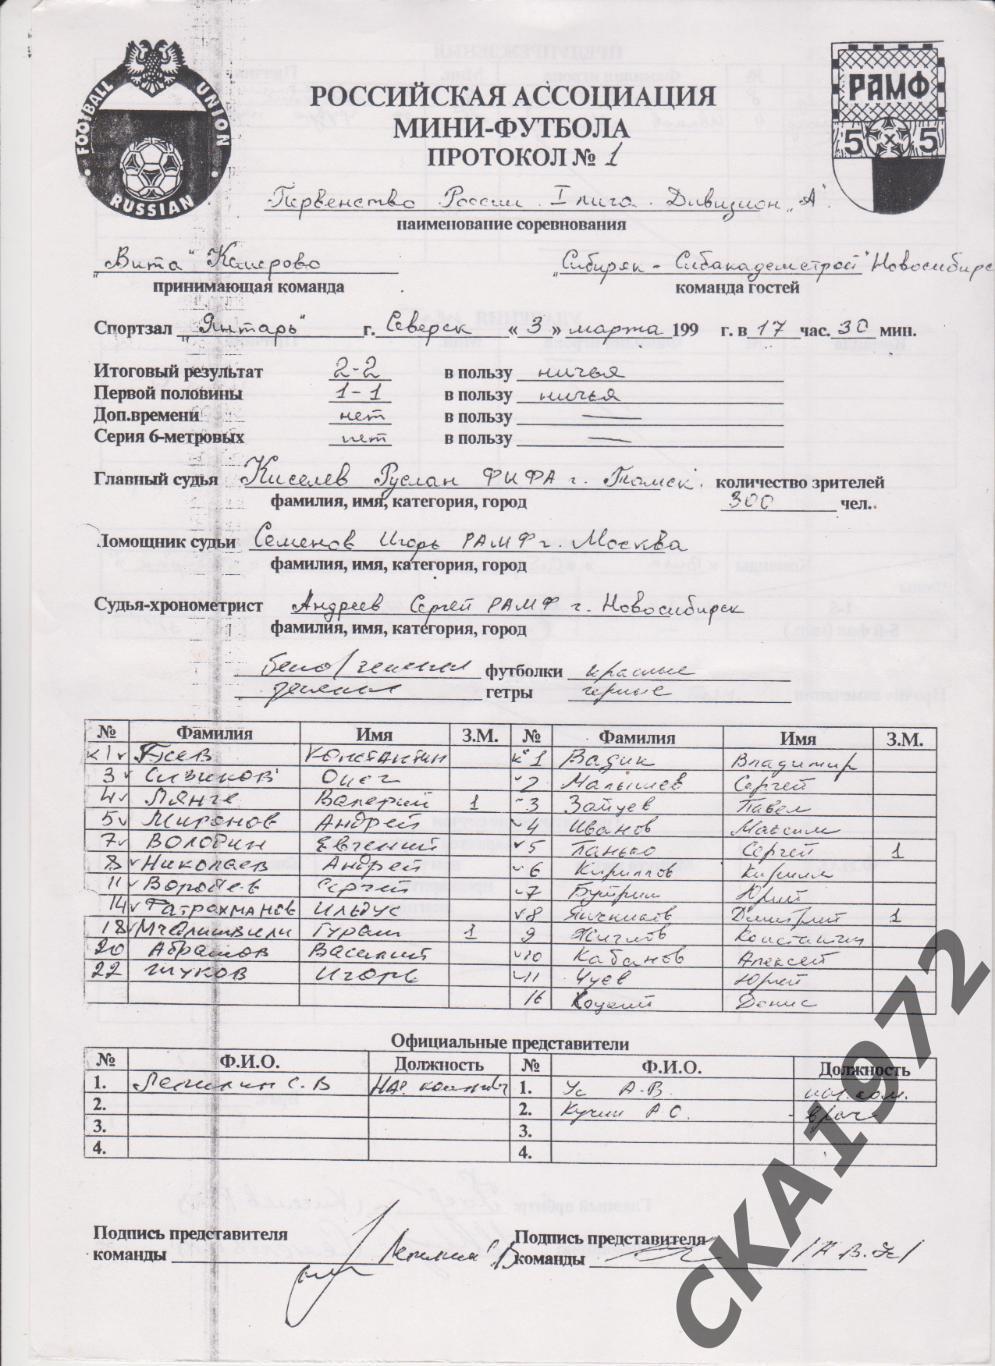 протоколы мини-футбол 1 лига дивизион А Северск 3-7 марта 1999 10 штук копии +